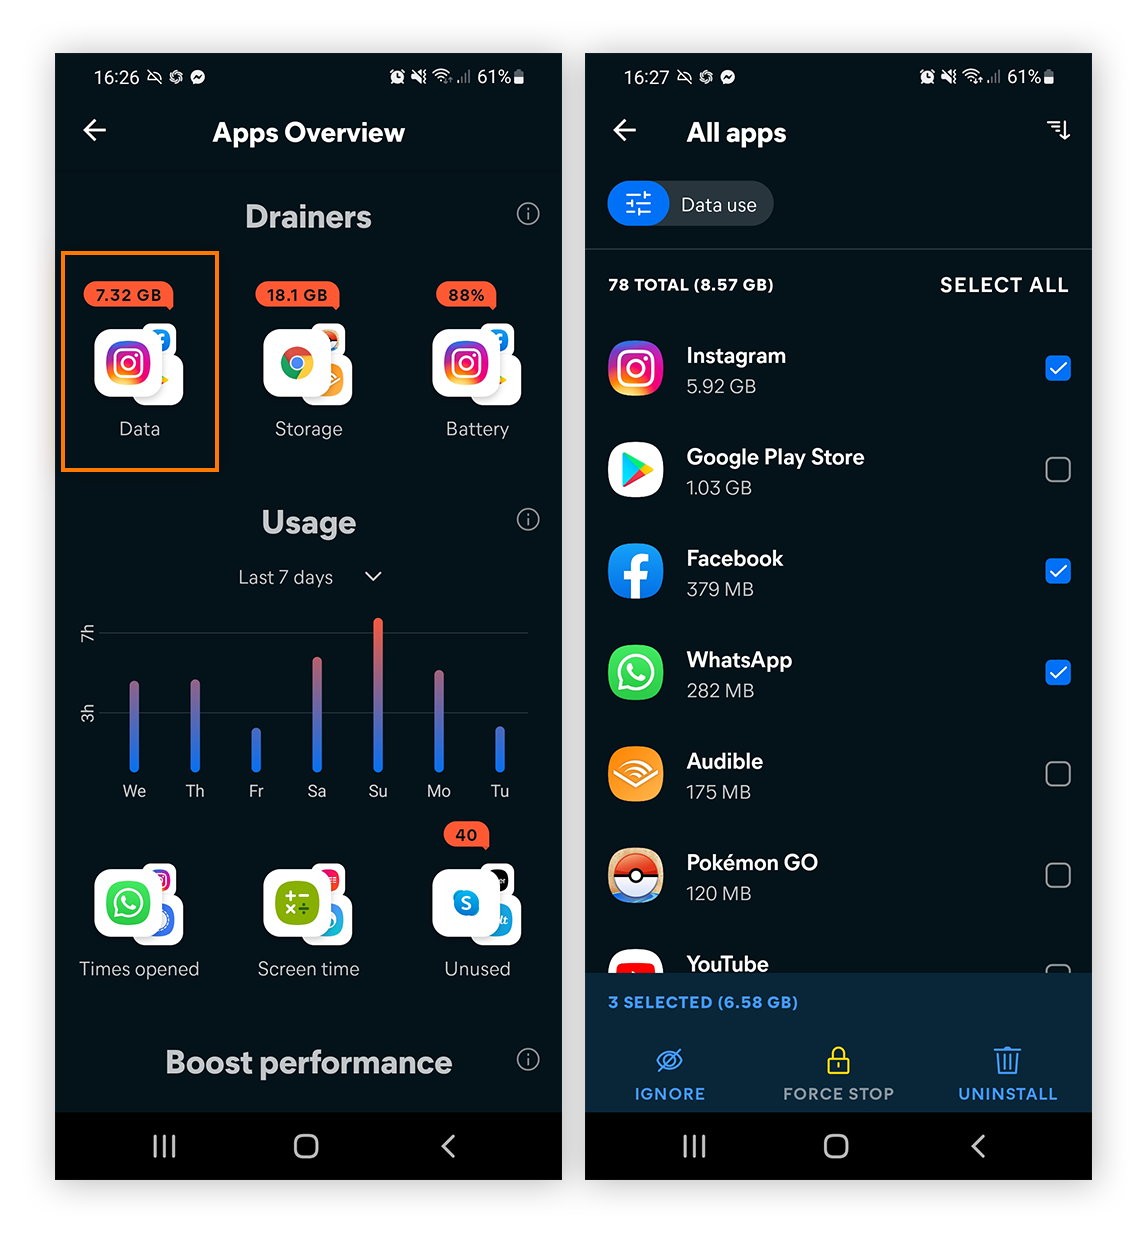 Avast Cleanup pour Android présente un aperçu des applications qui consomment des données et des ressources.